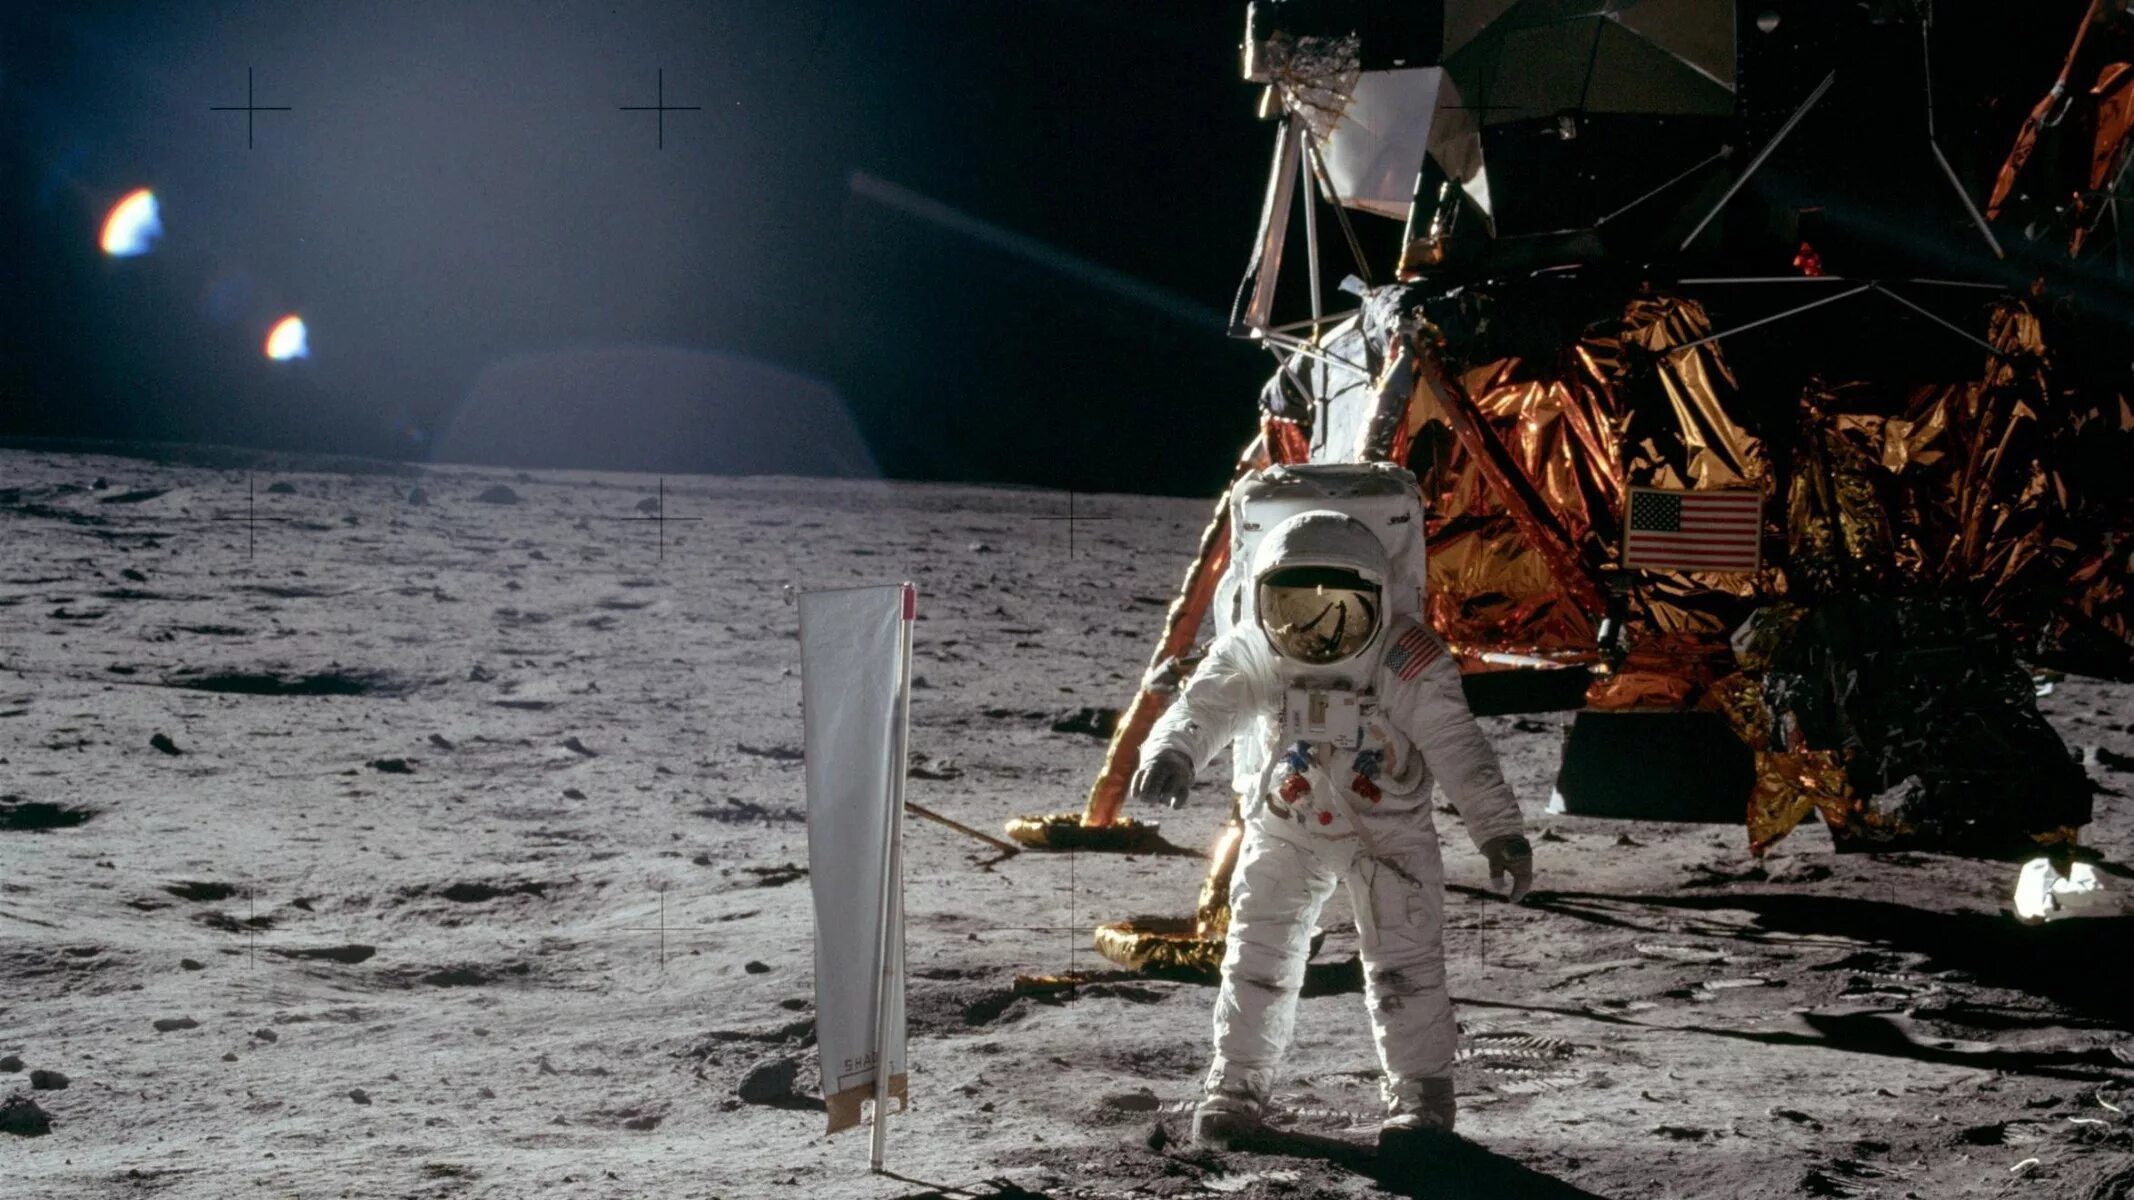 Апполо 11 на Луне. The astronauts on the moon